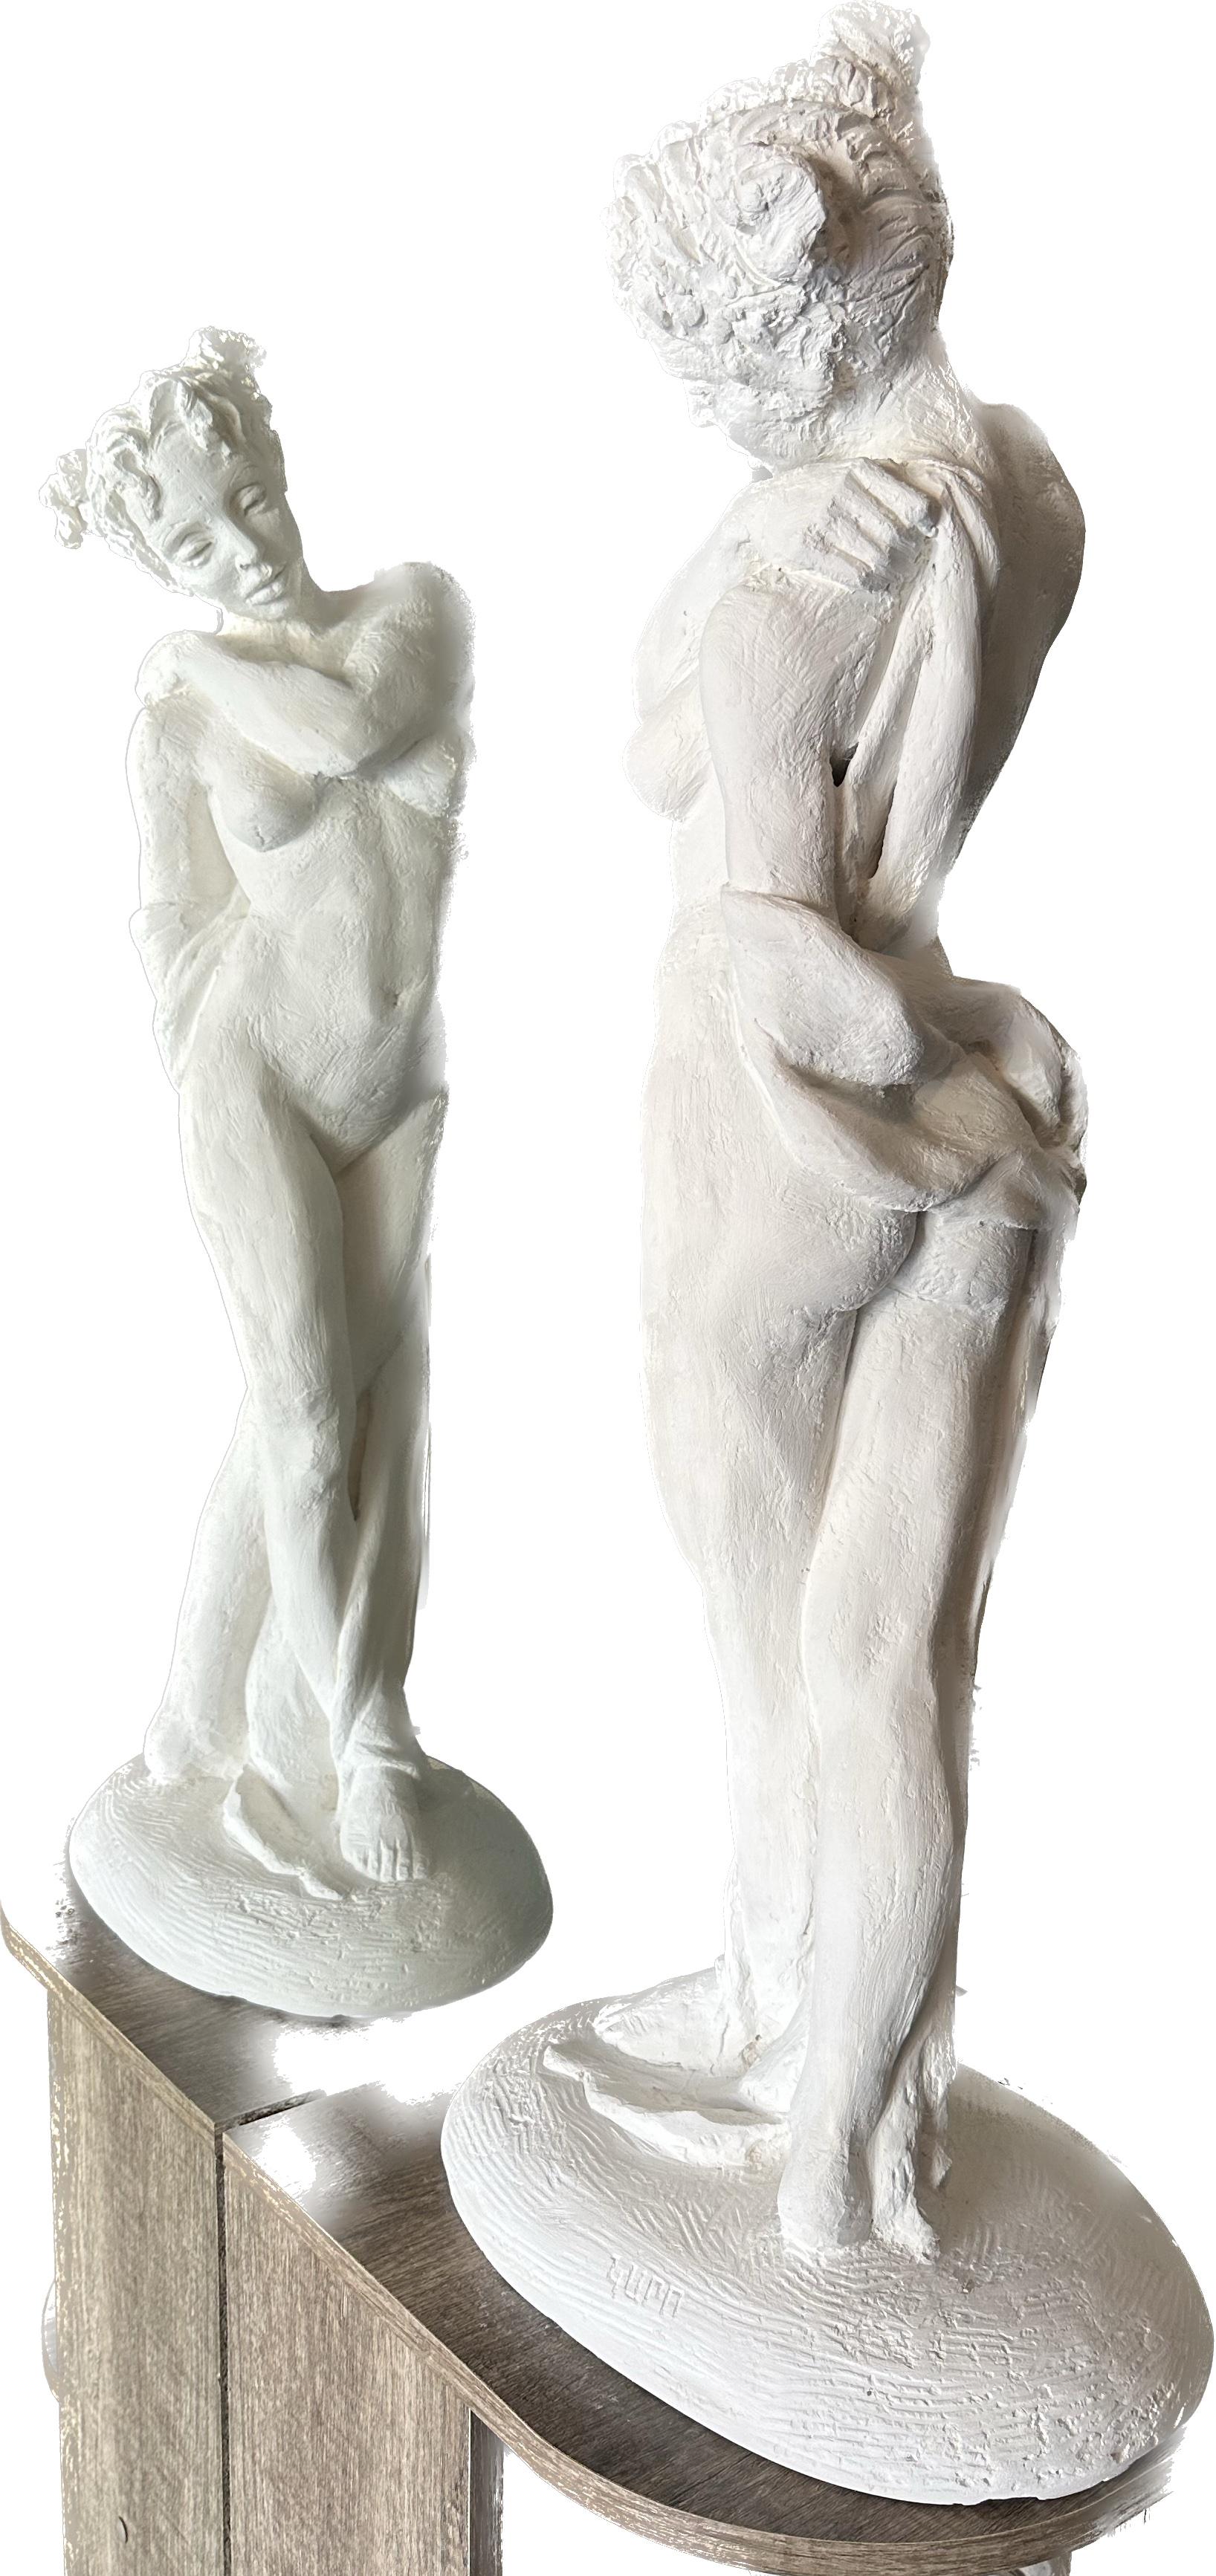 Standender Akt, Figur, Skulptur, Hydro-Stein, Staubmarmor Handgefertigt von Garo – Sculpture von Karapet Balakeseryan  (Garo)